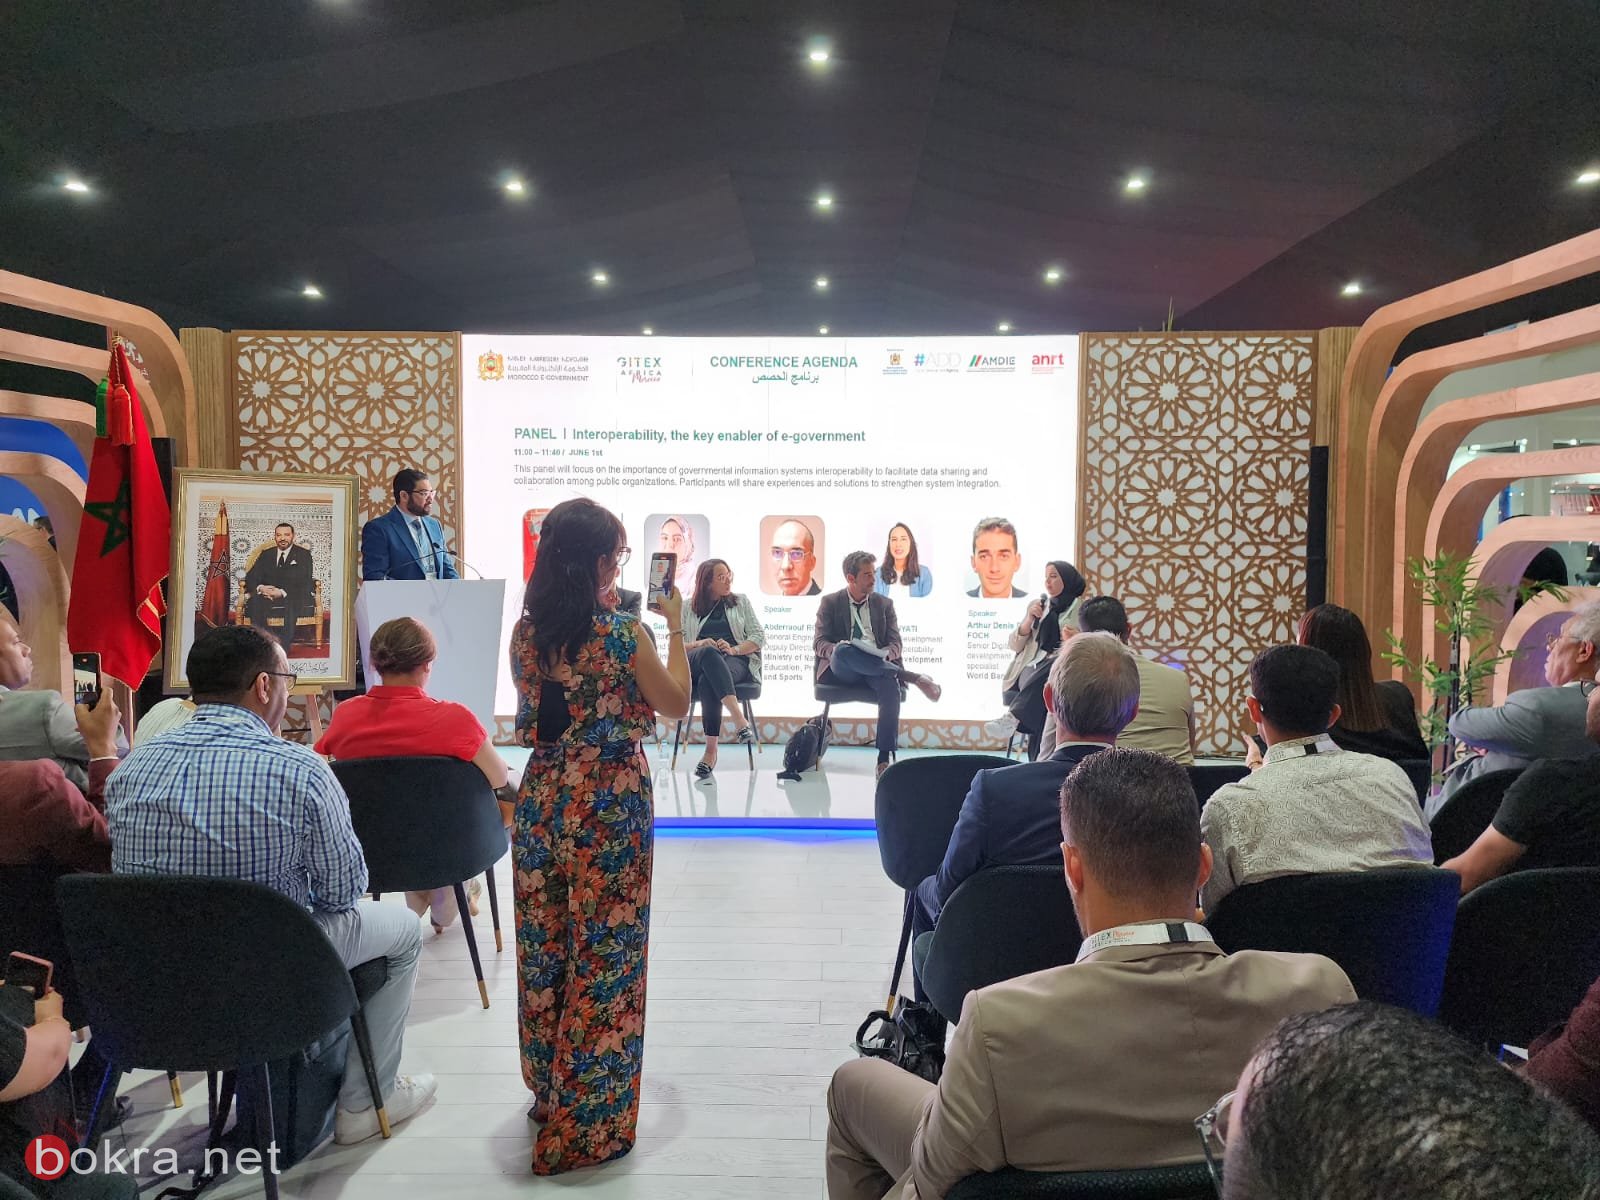 بحضور وتغطية خاصة لـ"بكرا"، مؤتمر "Gitex Africa " في المغرب مستمر بمشاركة واسعة-14